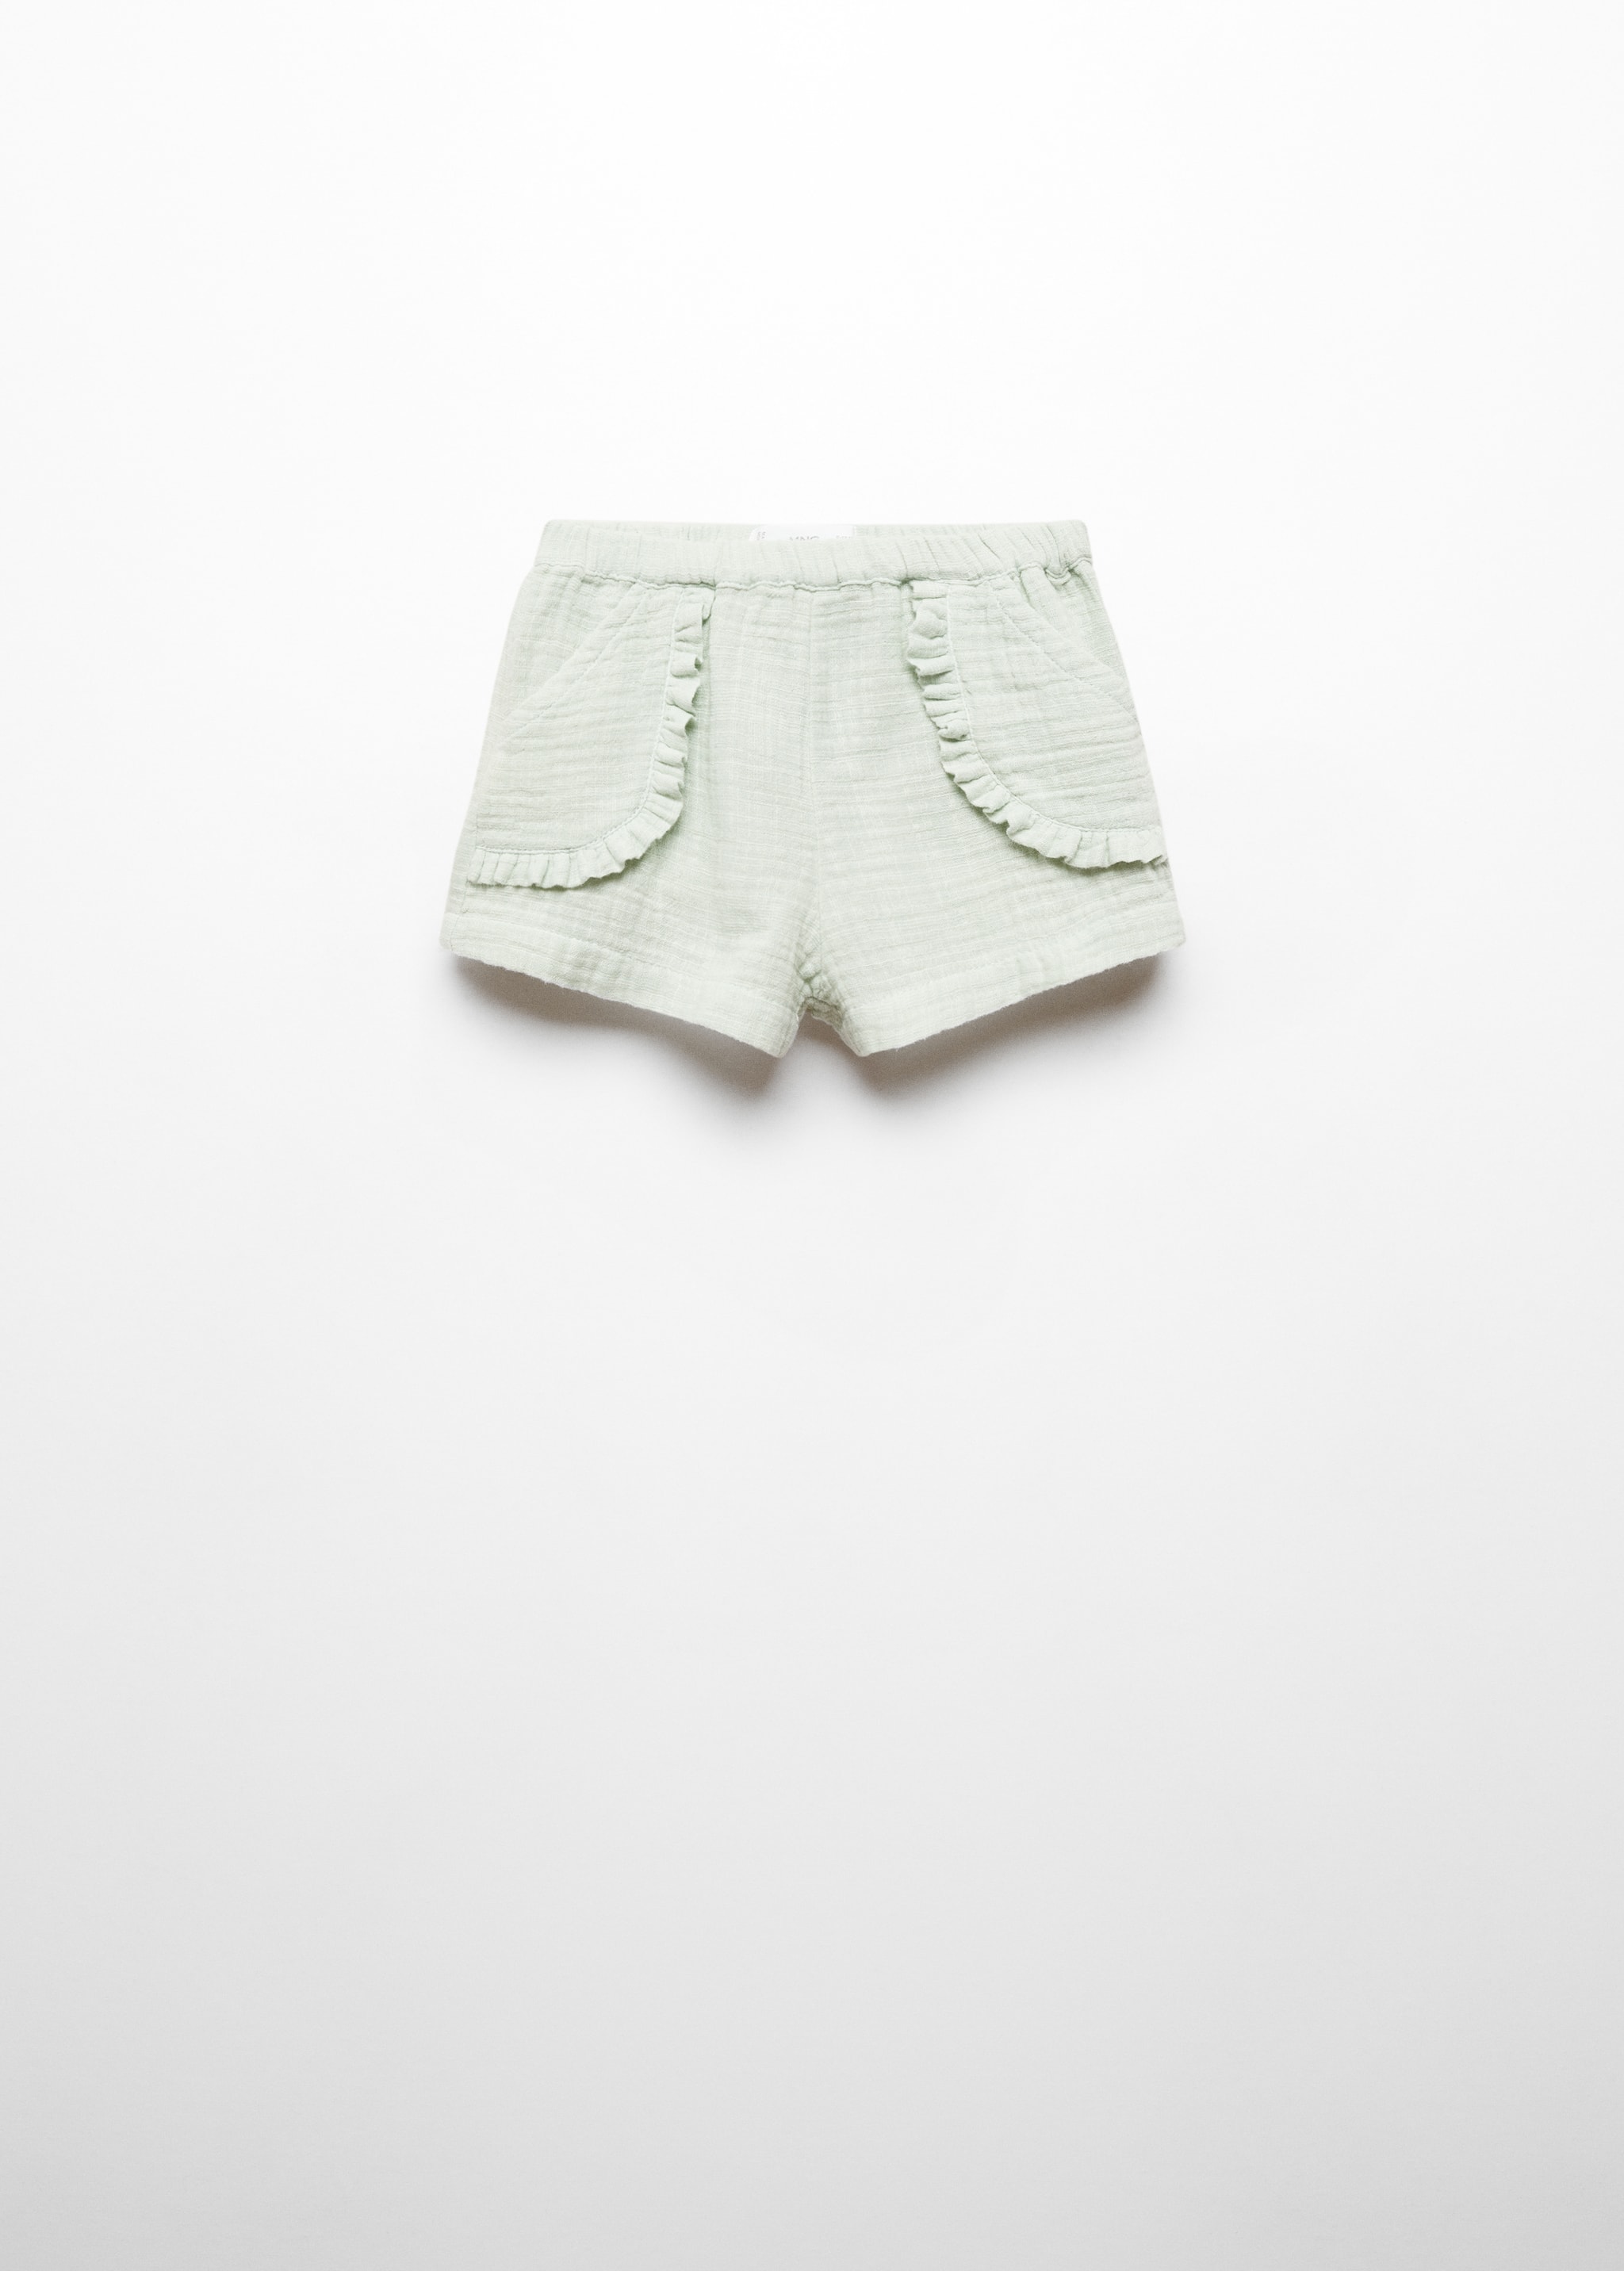 Хлопковые шорты с эластичным поясом - Изделие без модели